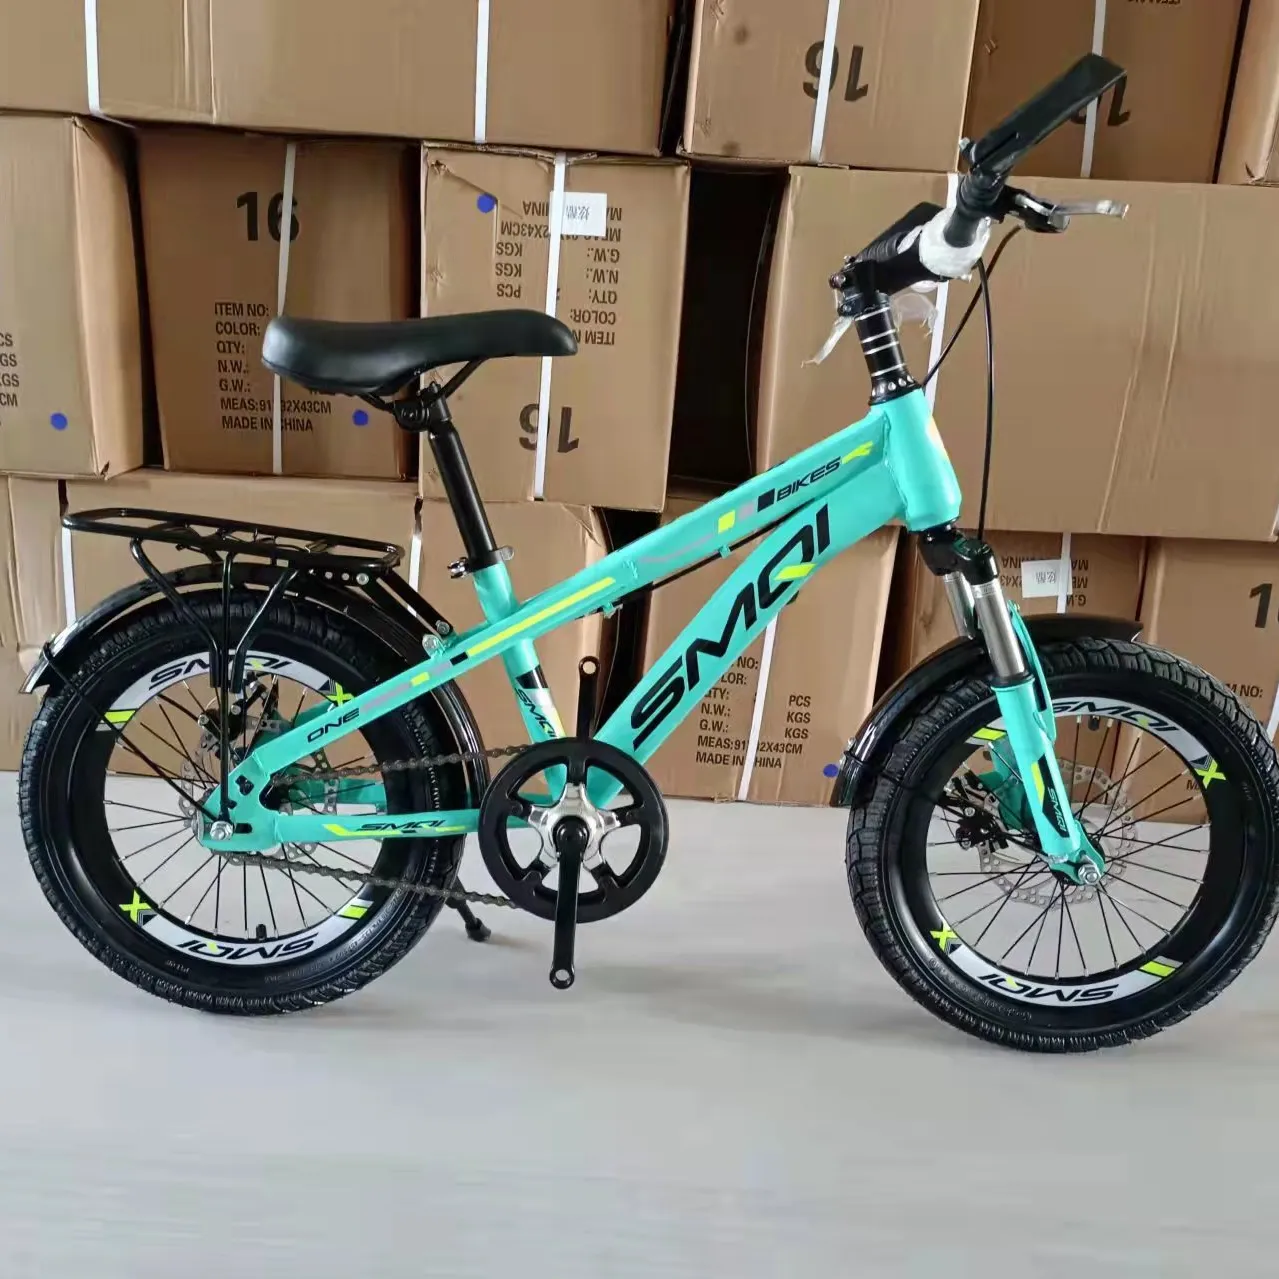 Großhandel hochwertige 20 Jungen Kind Fahrrad Ausrüstung Fahrrad/Online-Shopping für die Fahrt auf Kinder Fahrrad Mountainbike/Kinder Fahrrad 20 Zoll